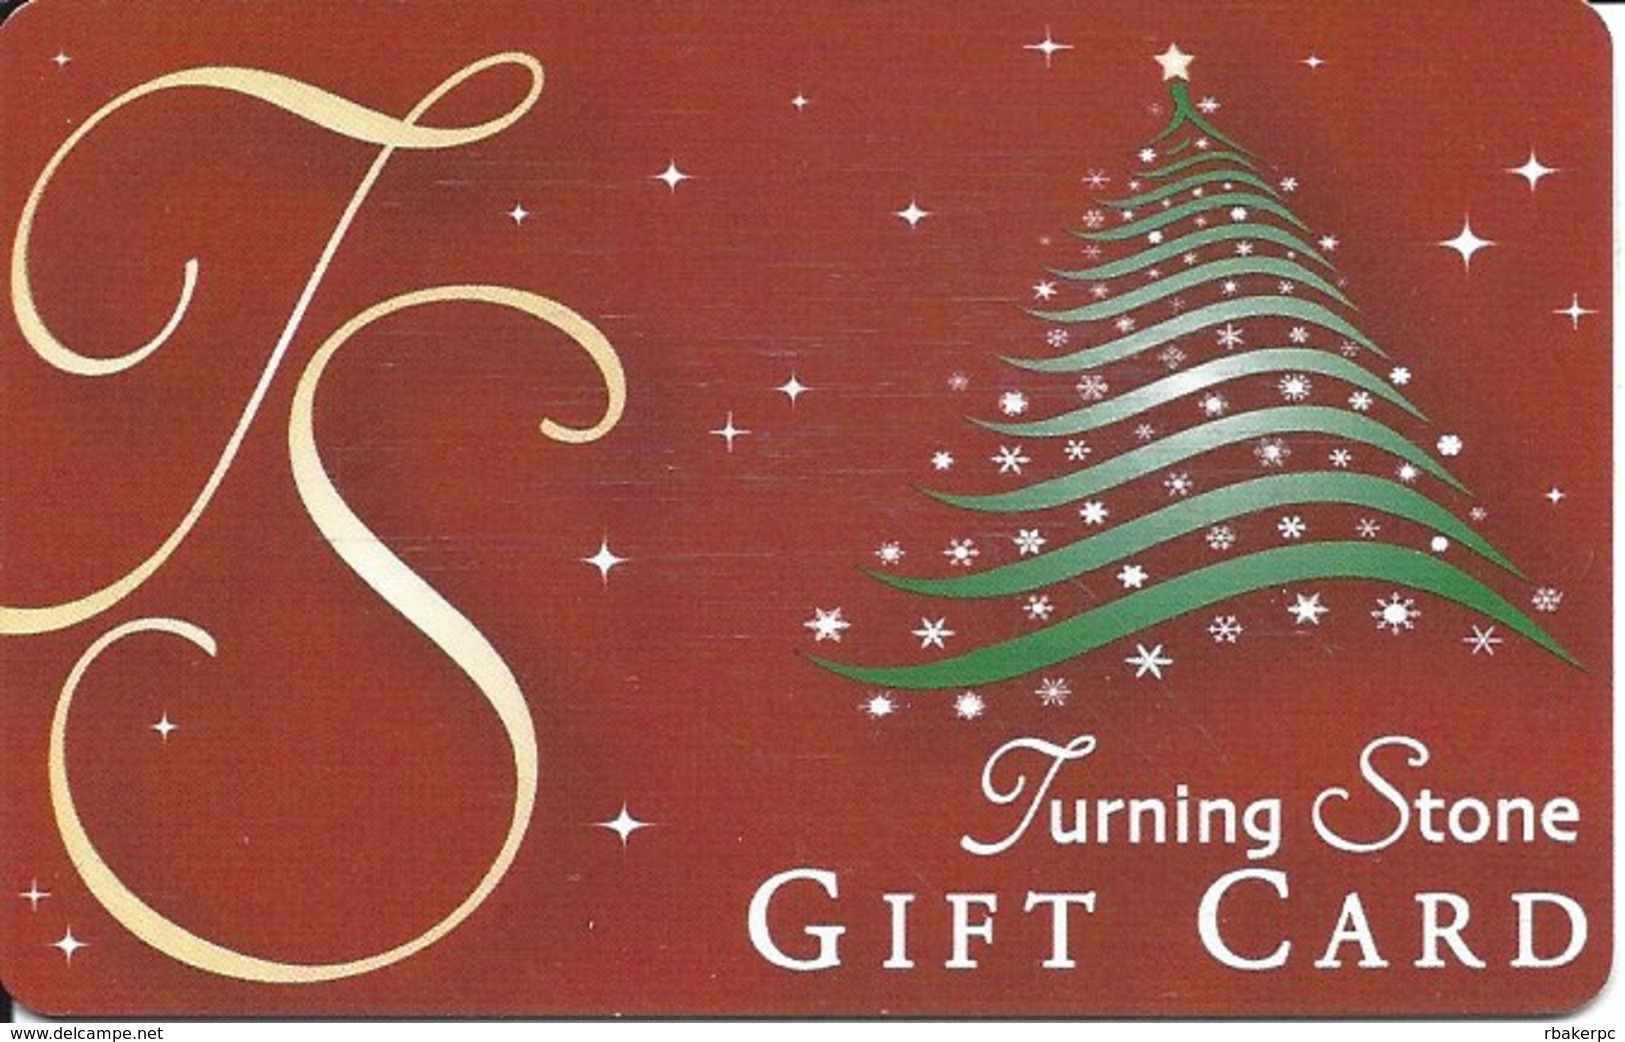 Turning Stone Casino - Verona NY - Gift Card - Gift Cards